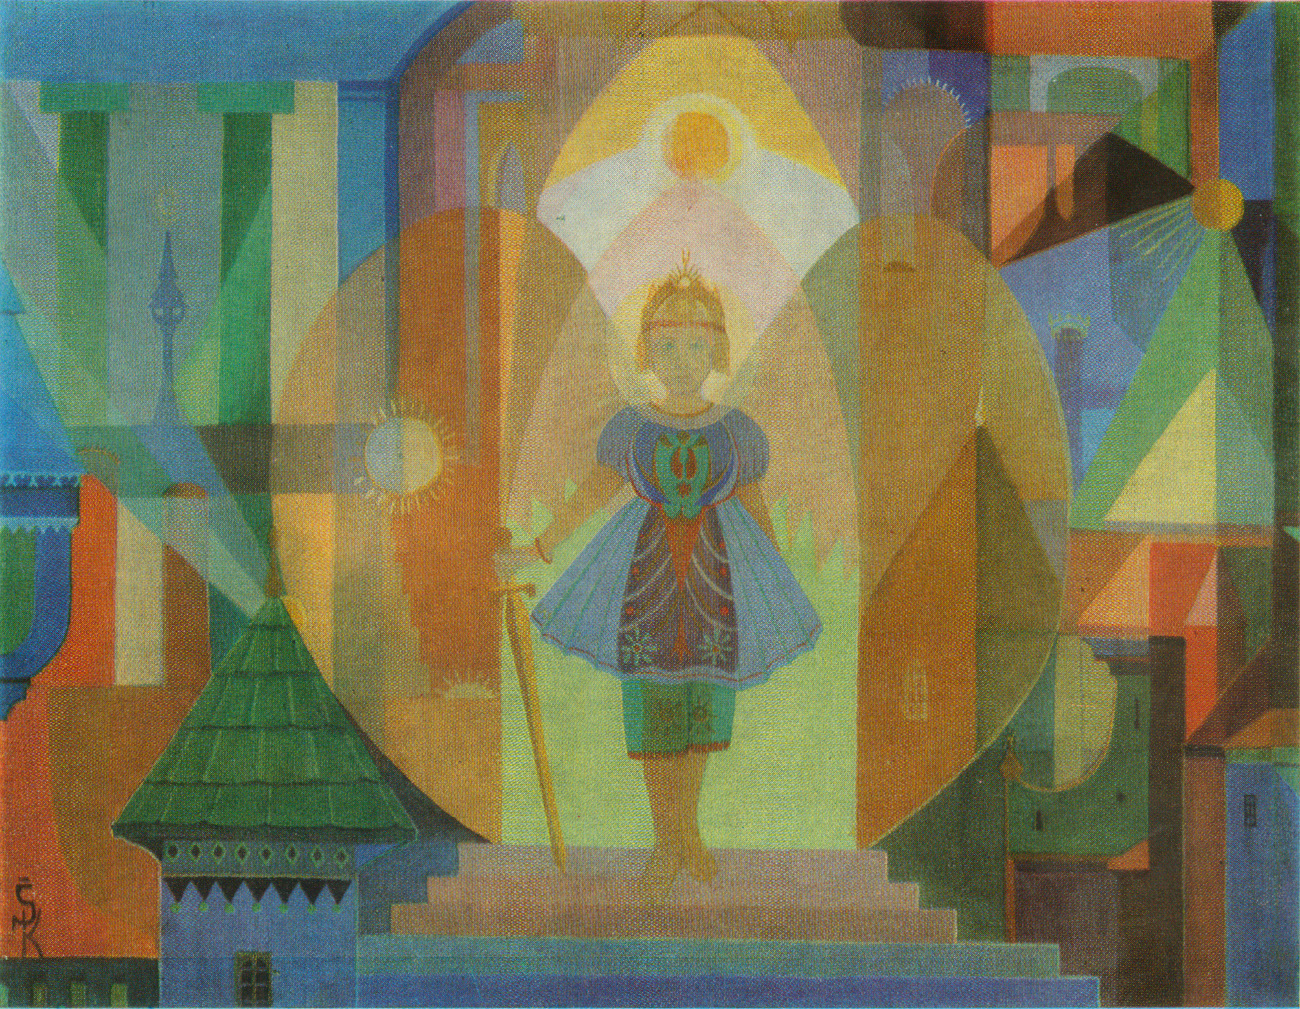    Казис Шимонис, живопись и книжная графика | Вхождение (Дочь солнца). 1924